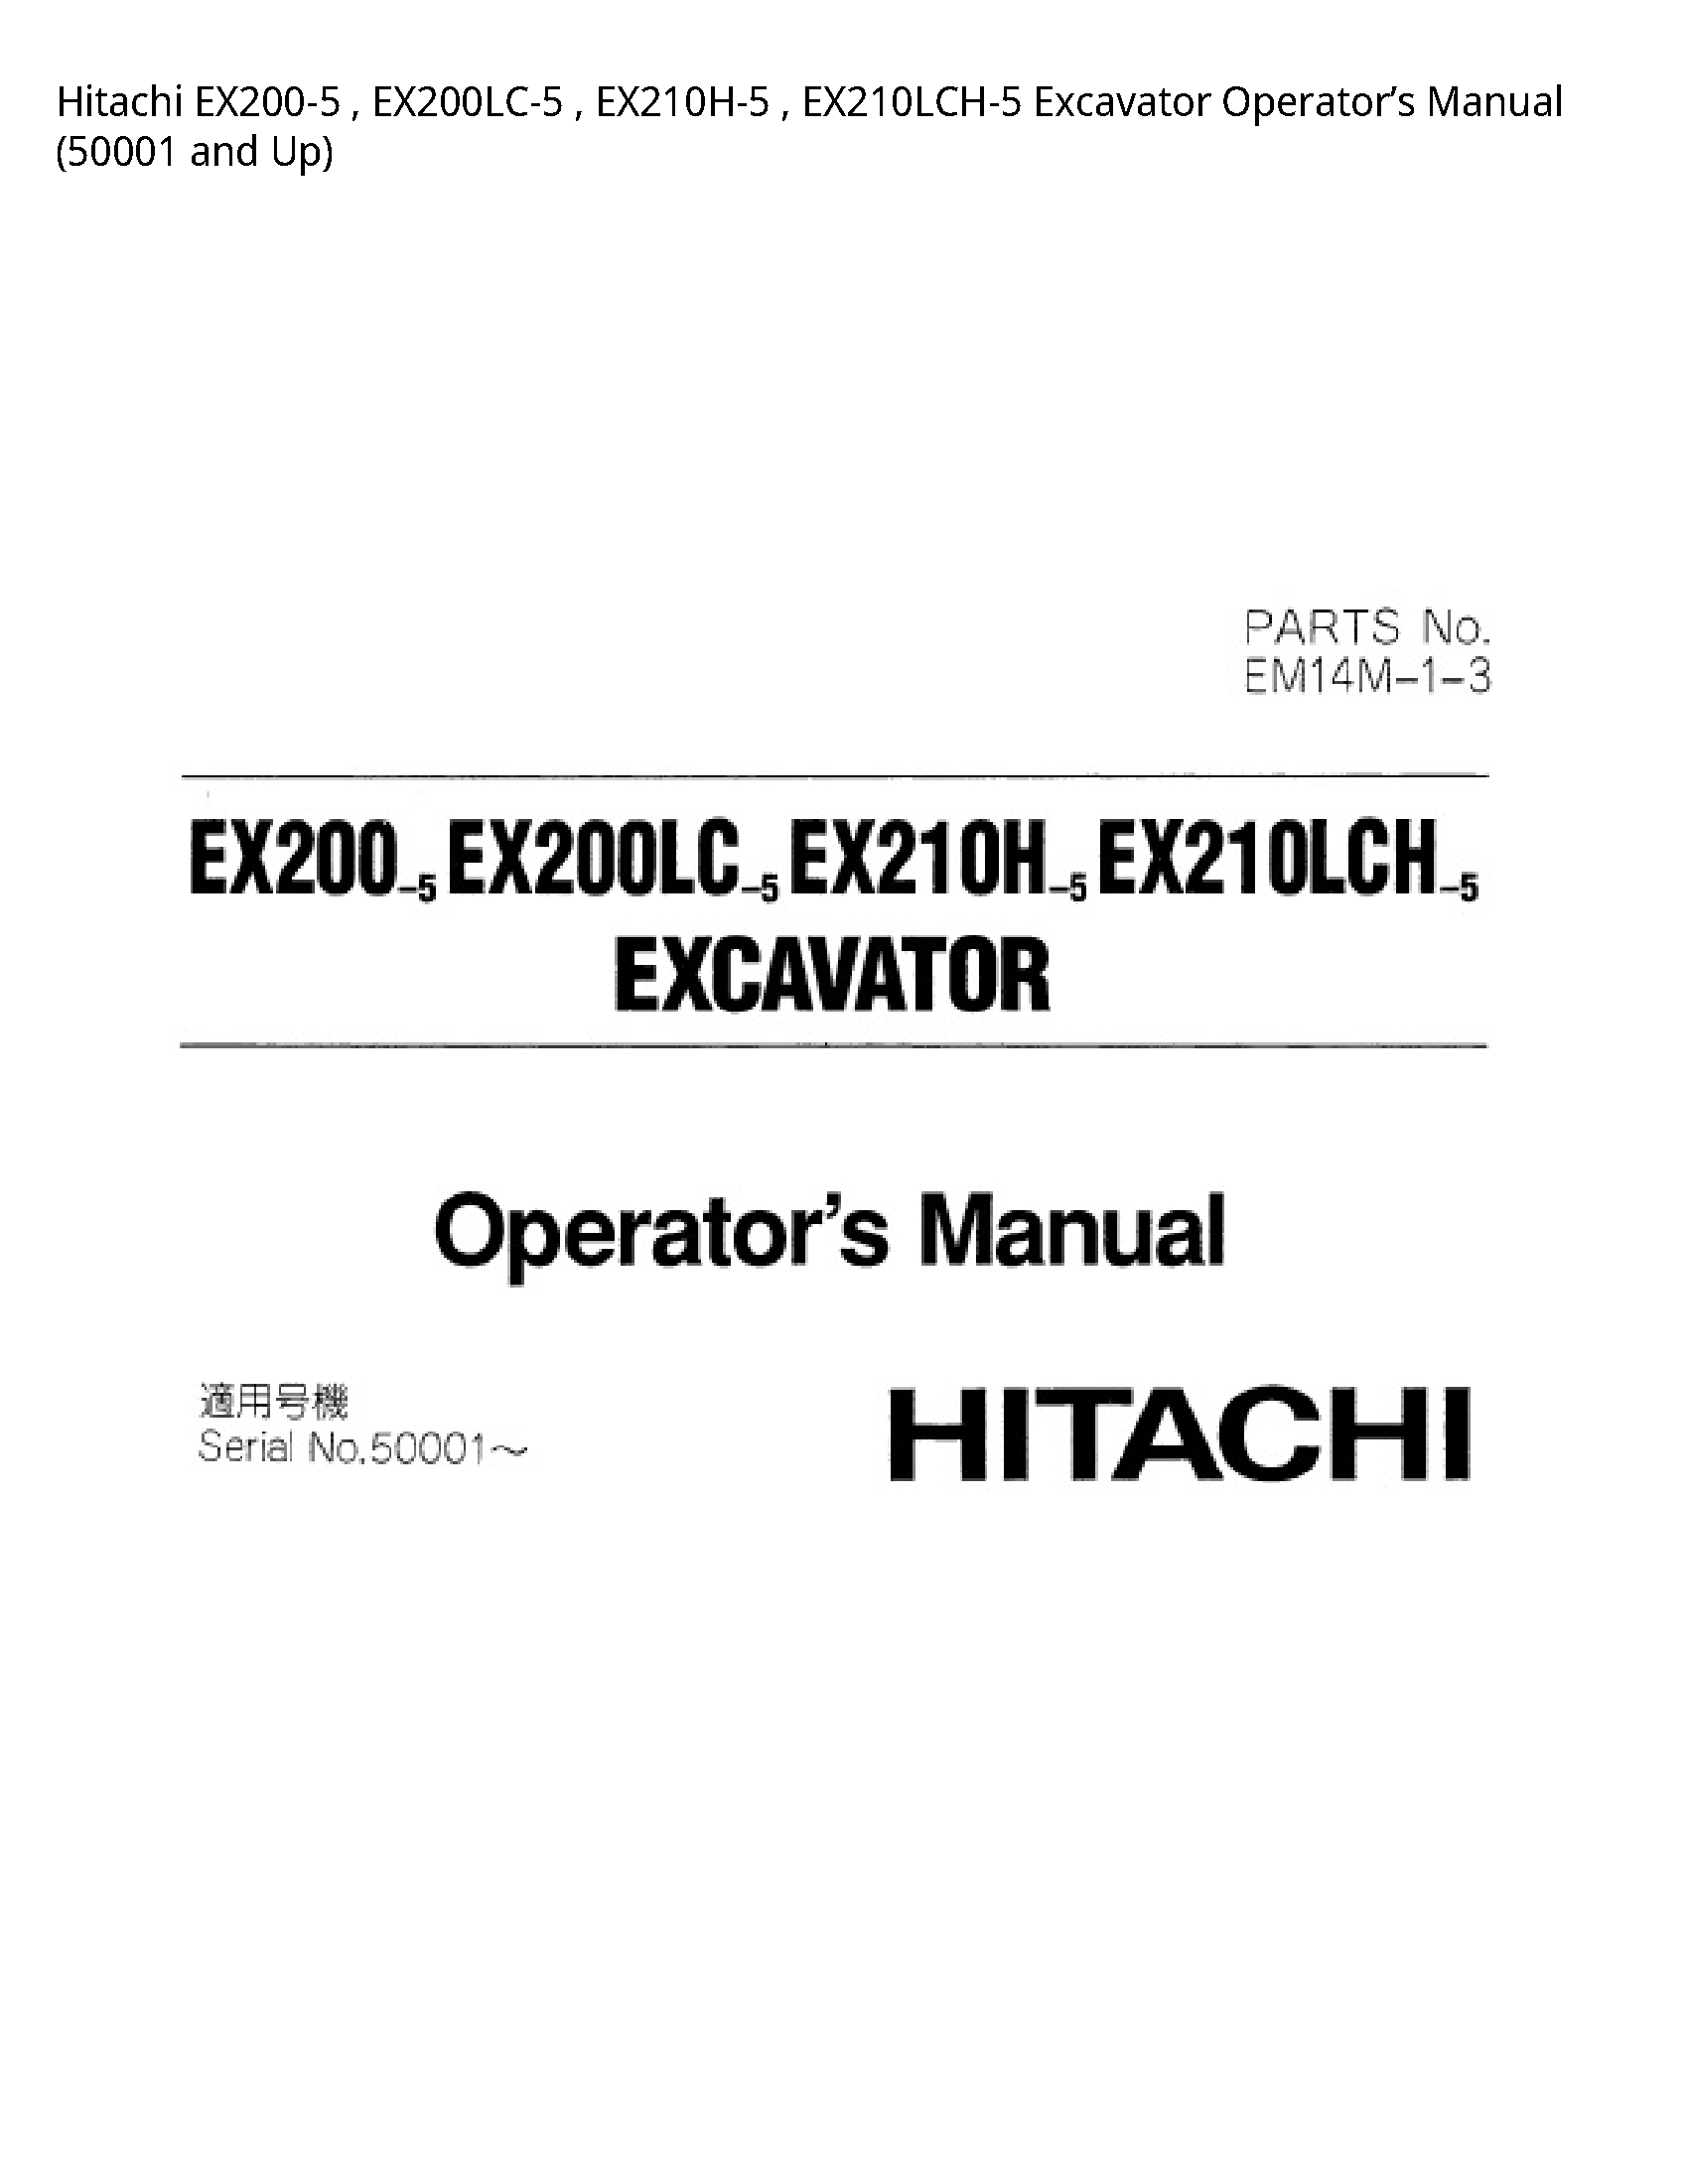 Hitachi EX200-5 Excavator Operator’s manual